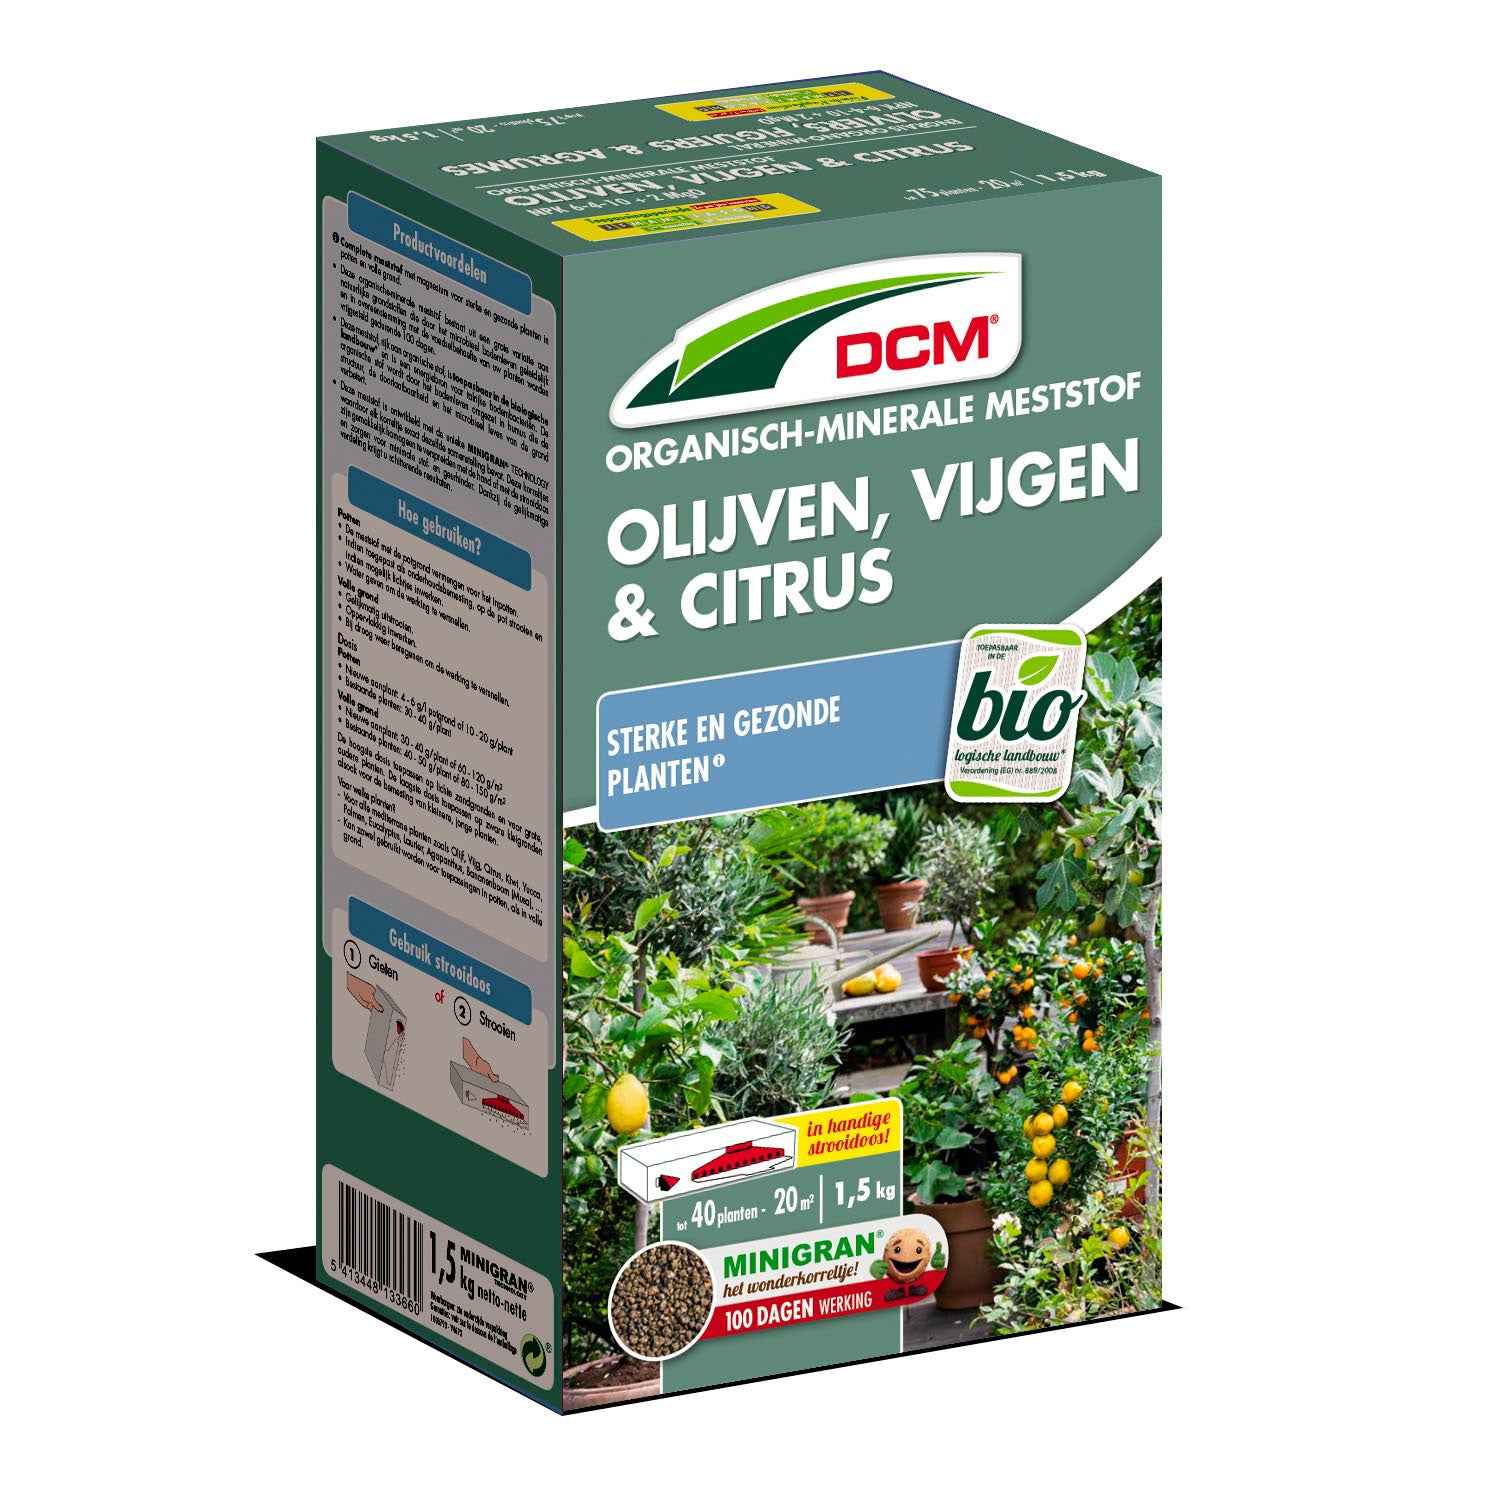 Engrais végétal pour oliviers, figuiers et citronniers - Biologique 1,5 kg - DCM - Engrais